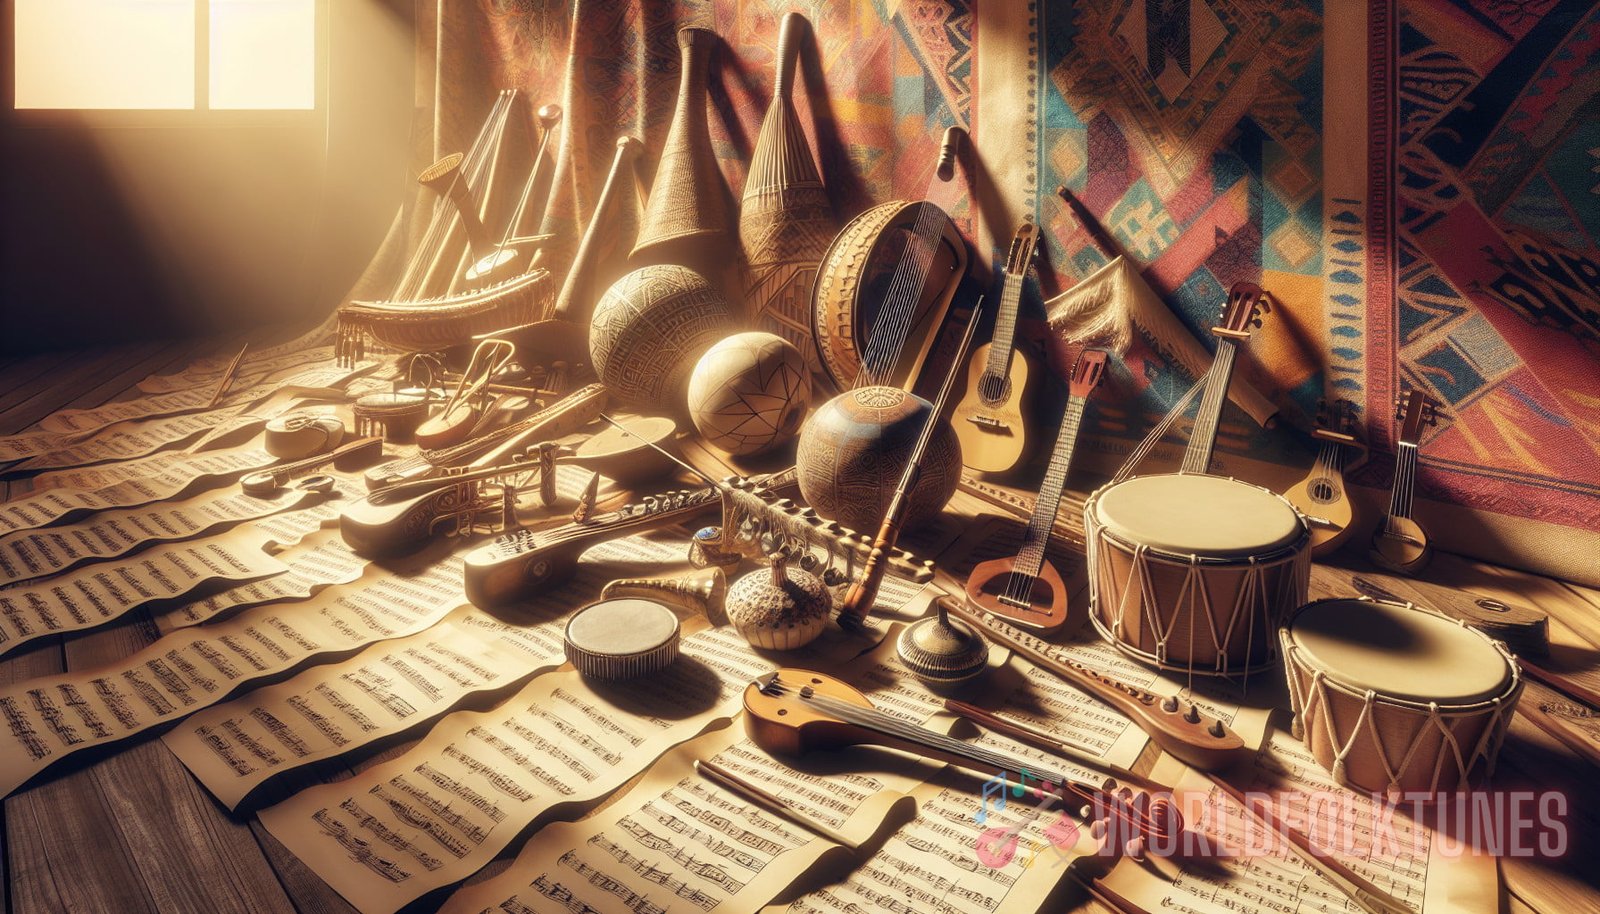 Illustration for section:  - folk instruments